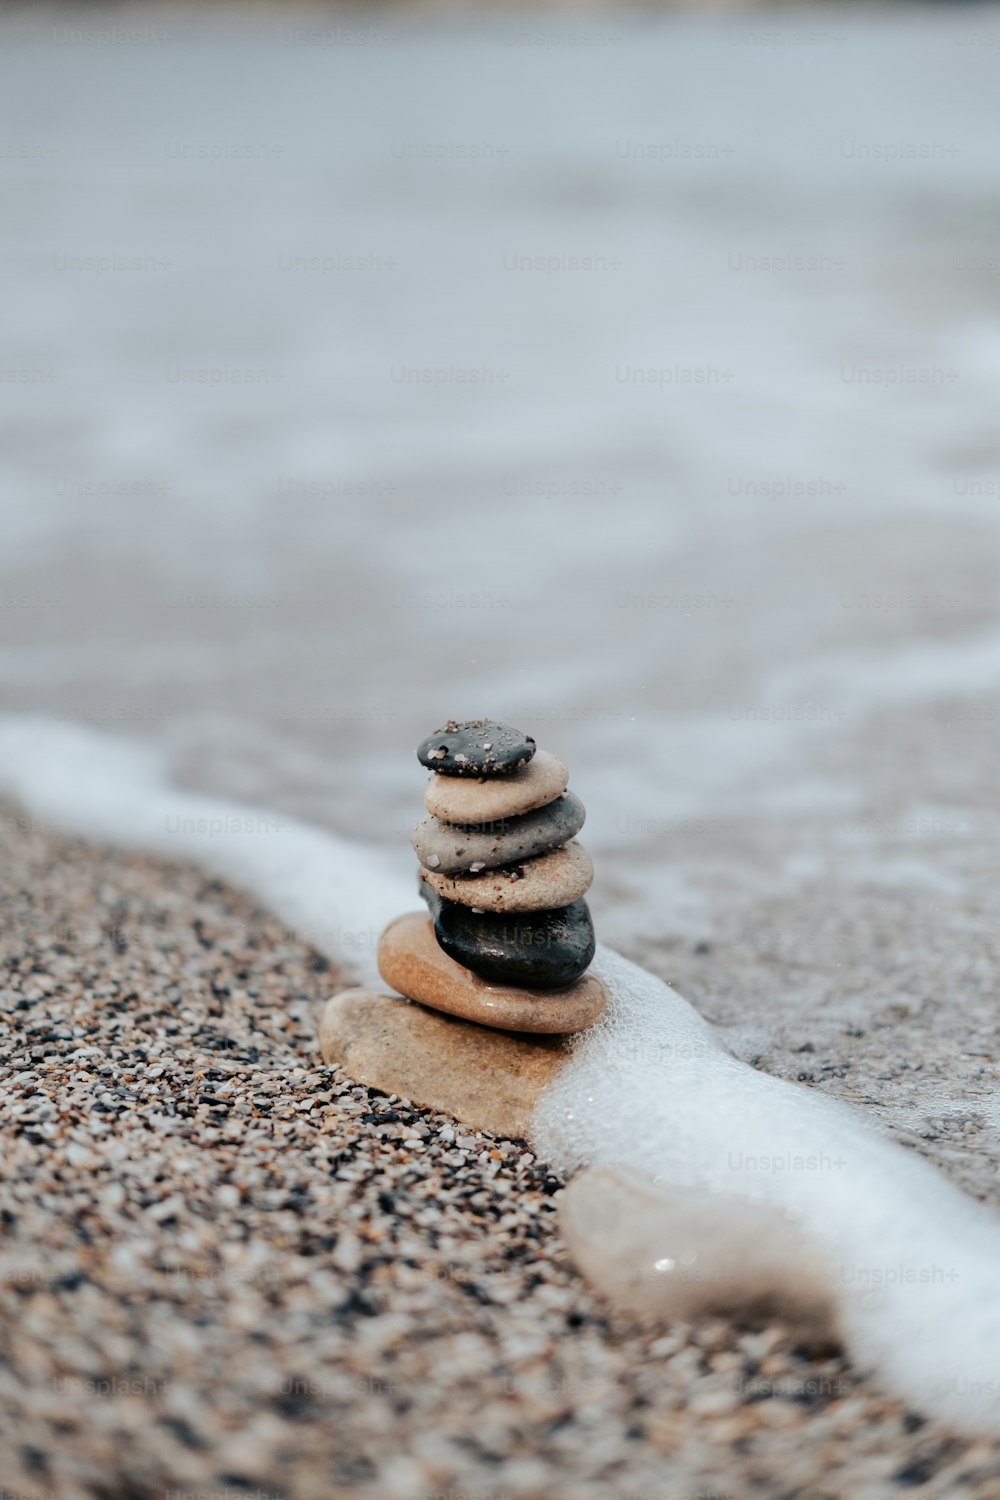 모래 사장 위에 앉아 있는 바위 더미